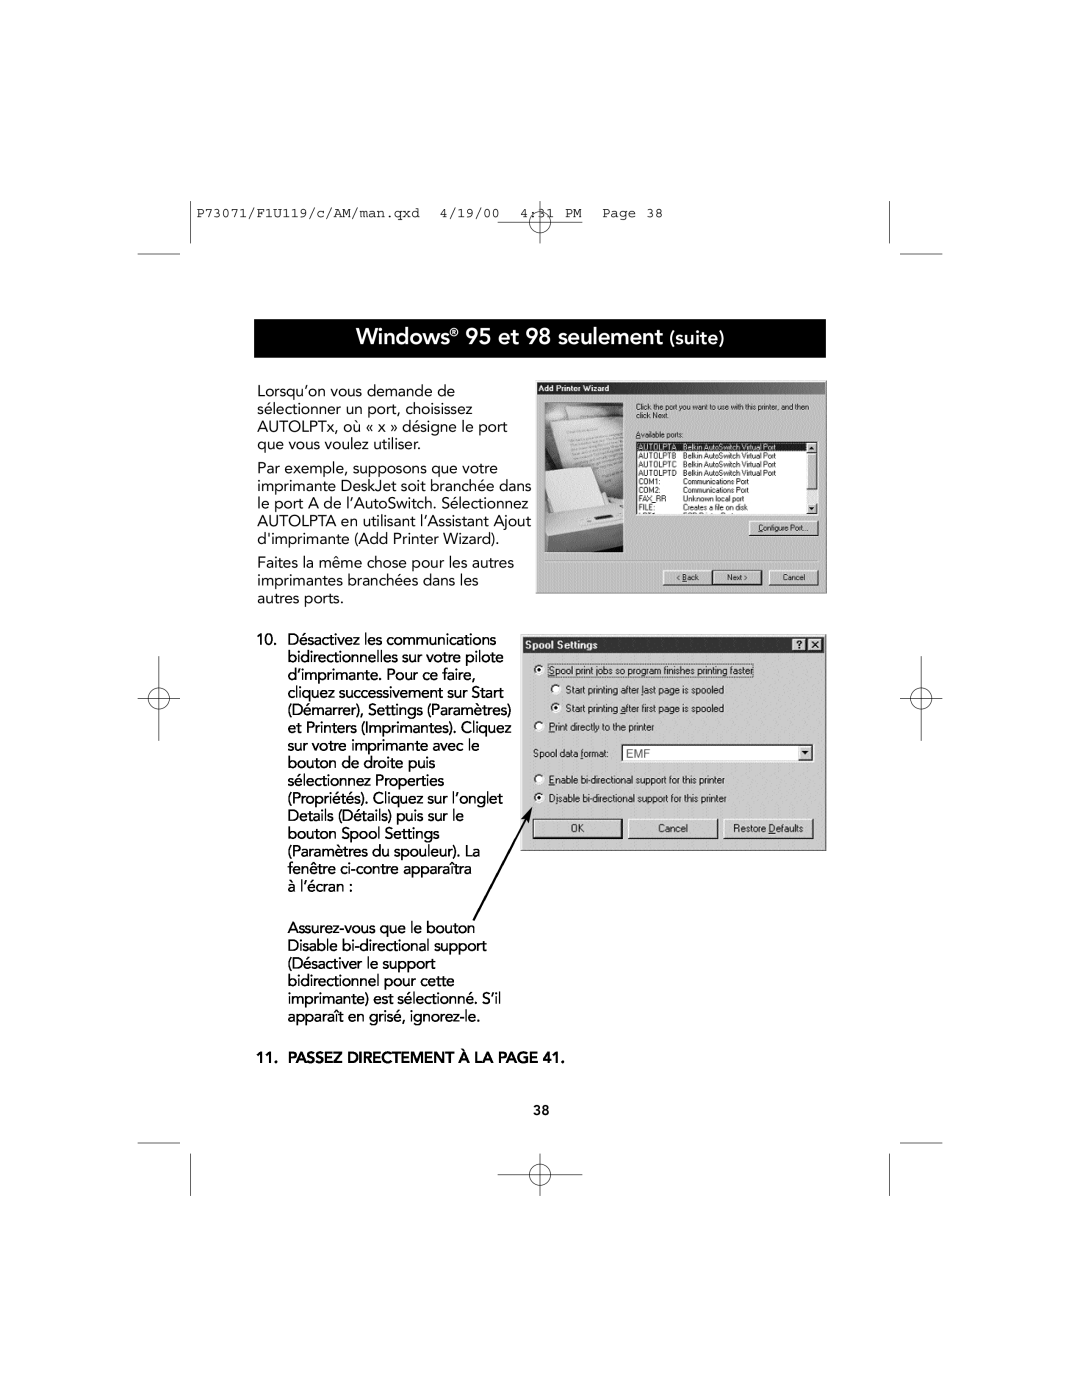 Belkin F1U119 user manual Windows 95 et 98 seulement suite, à l’écran 